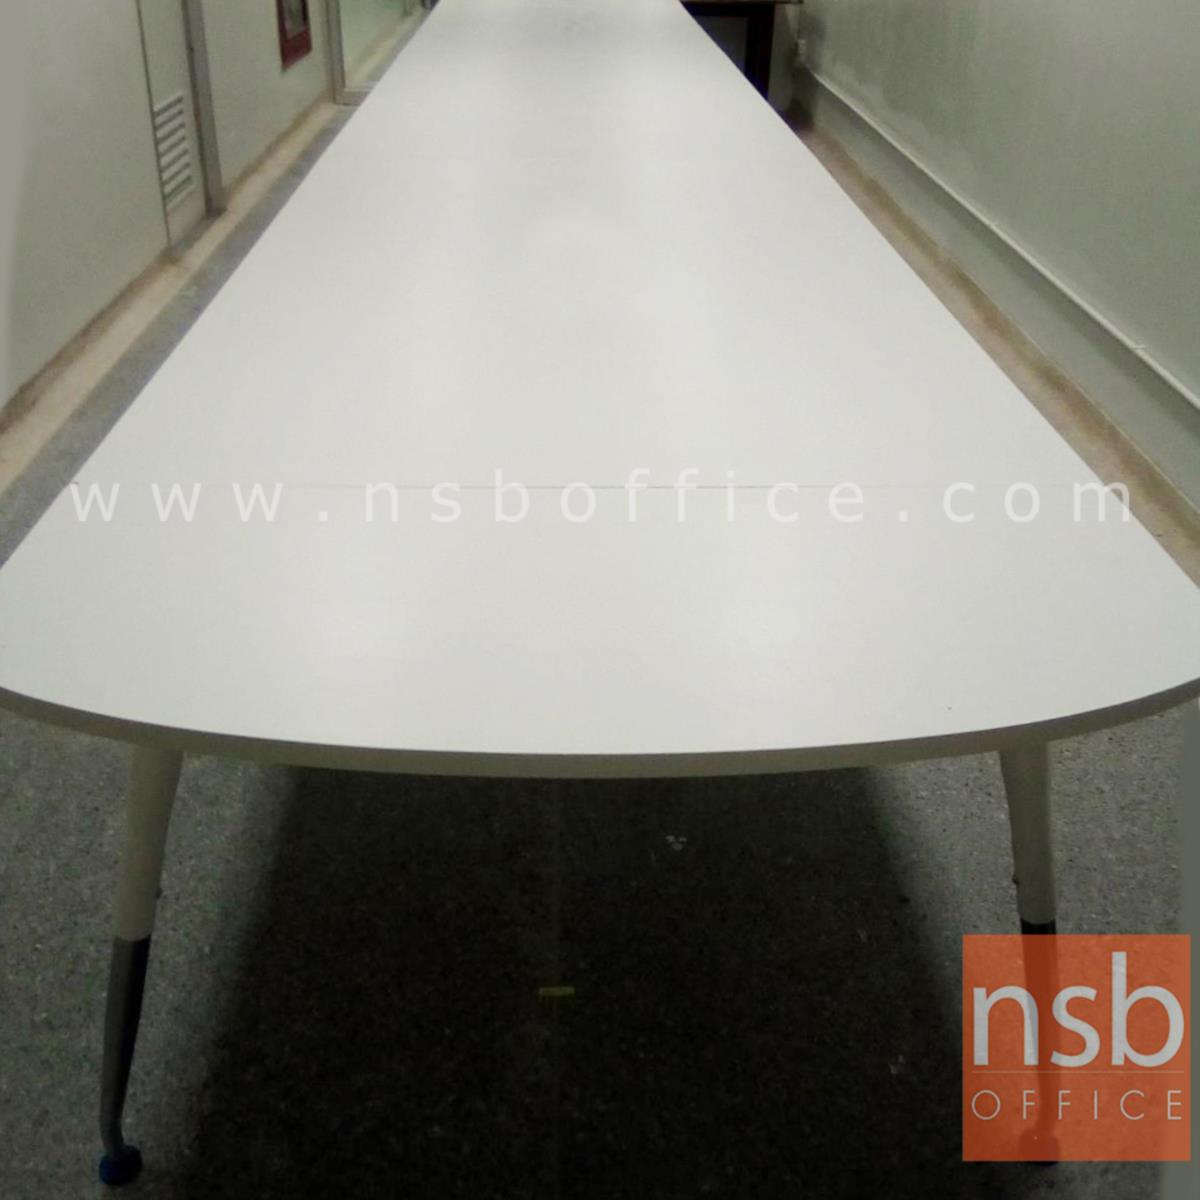 โต๊ะประชุมหัวโค้ง ขาปลายเรียว ลึก 180 cm.  